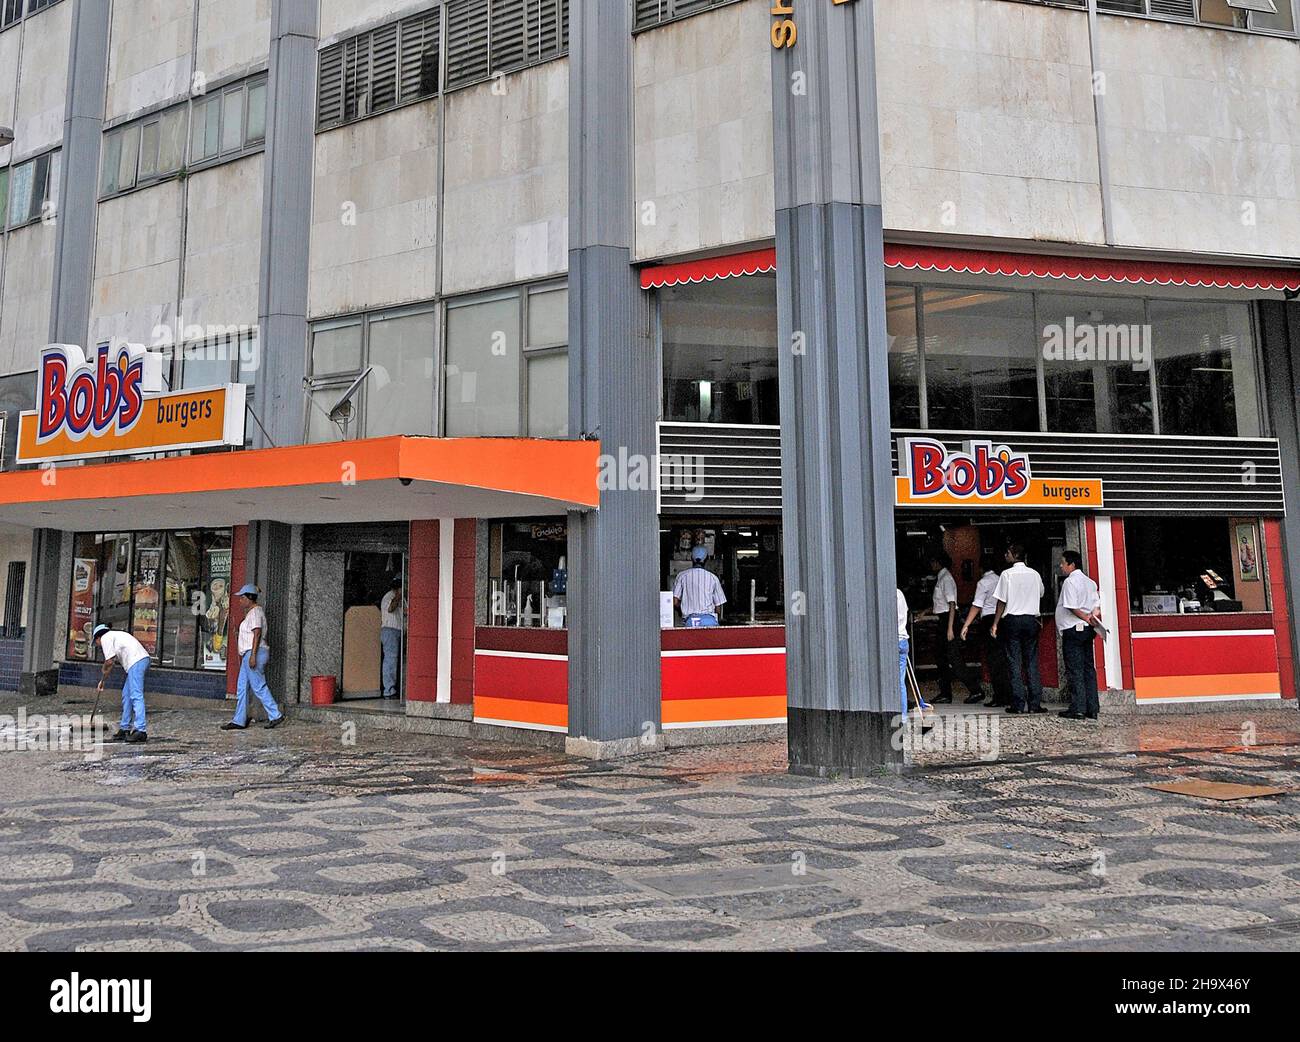 Shopping, Avenida Central, Bob burgers , Rio de Janeiro, Brazil Stock Photo